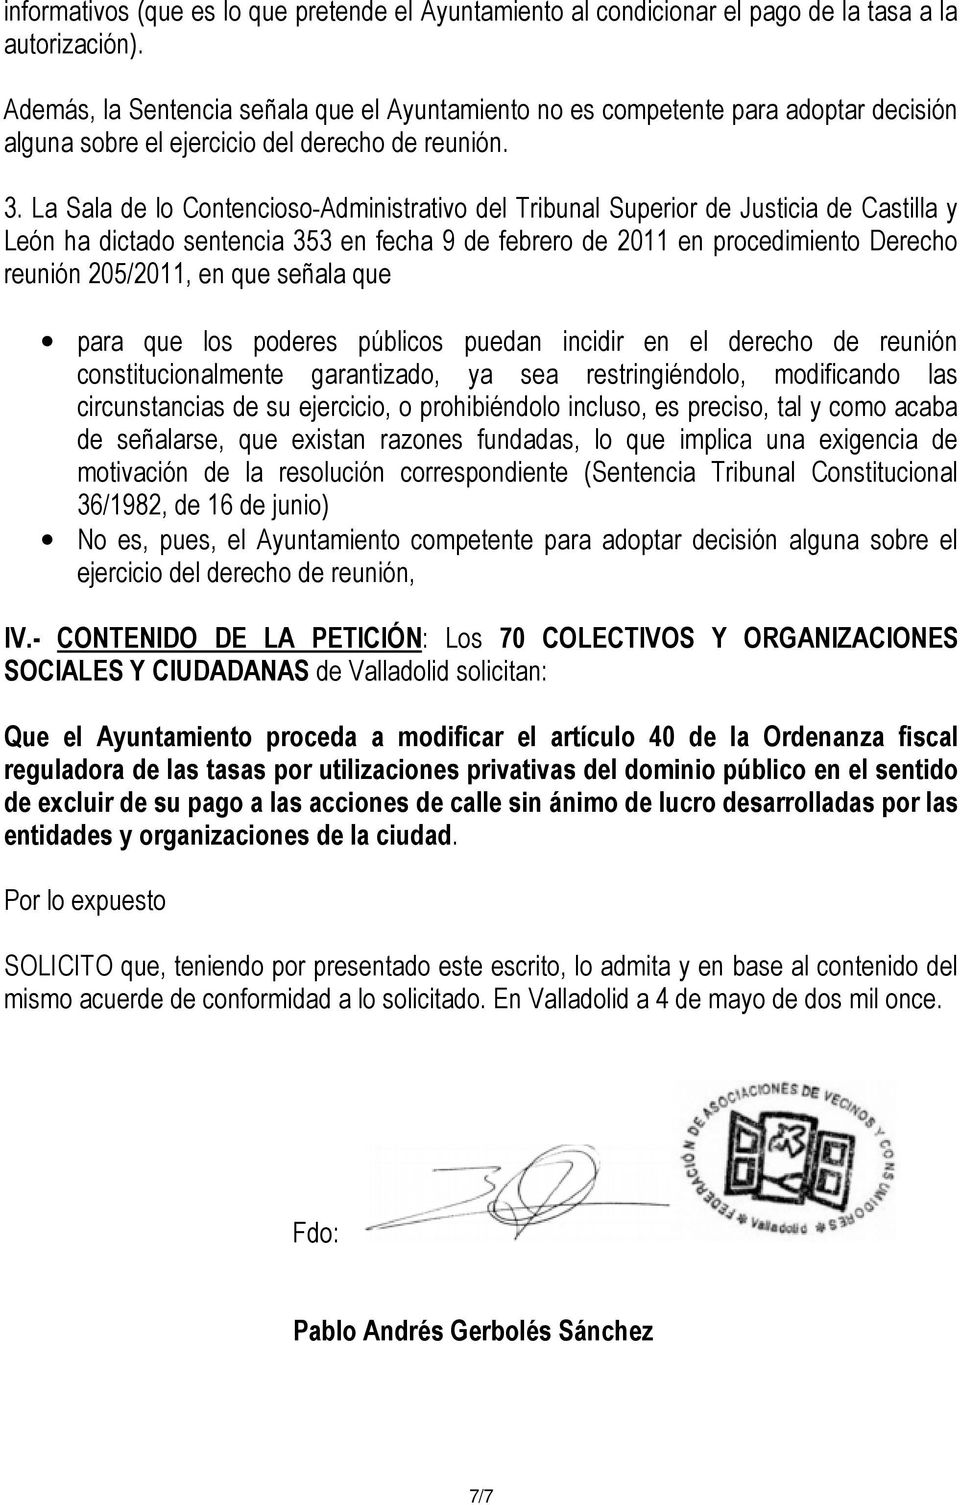 La Sala de lo Contencioso-Administrativo del Tribunal Superior de Justicia de Castilla y León ha dictado sentencia 353 en fecha 9 de febrero de 2011 en procedimiento Derecho reunión 205/2011, en que